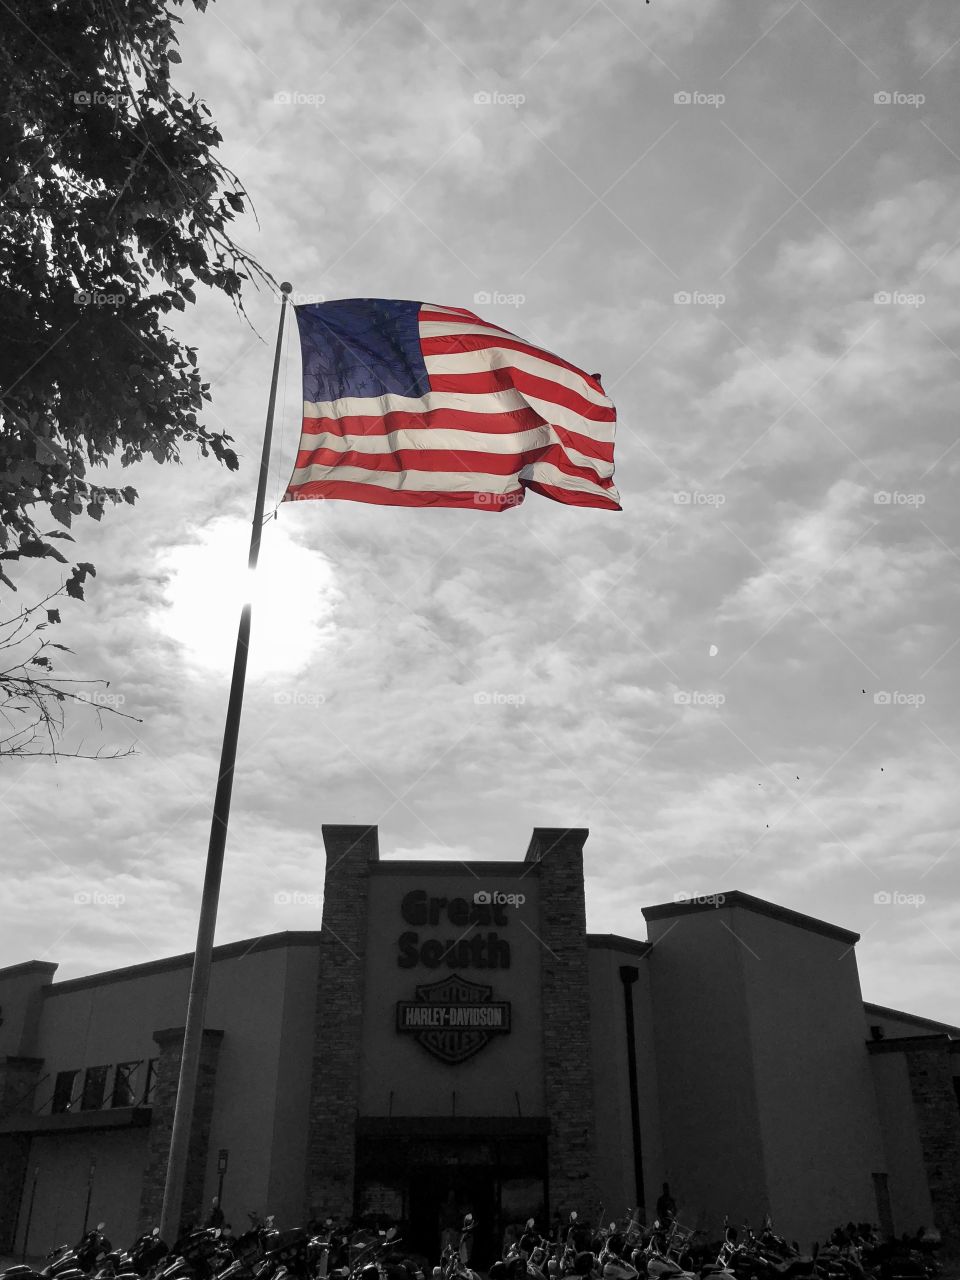 American Flag at Harley dealer